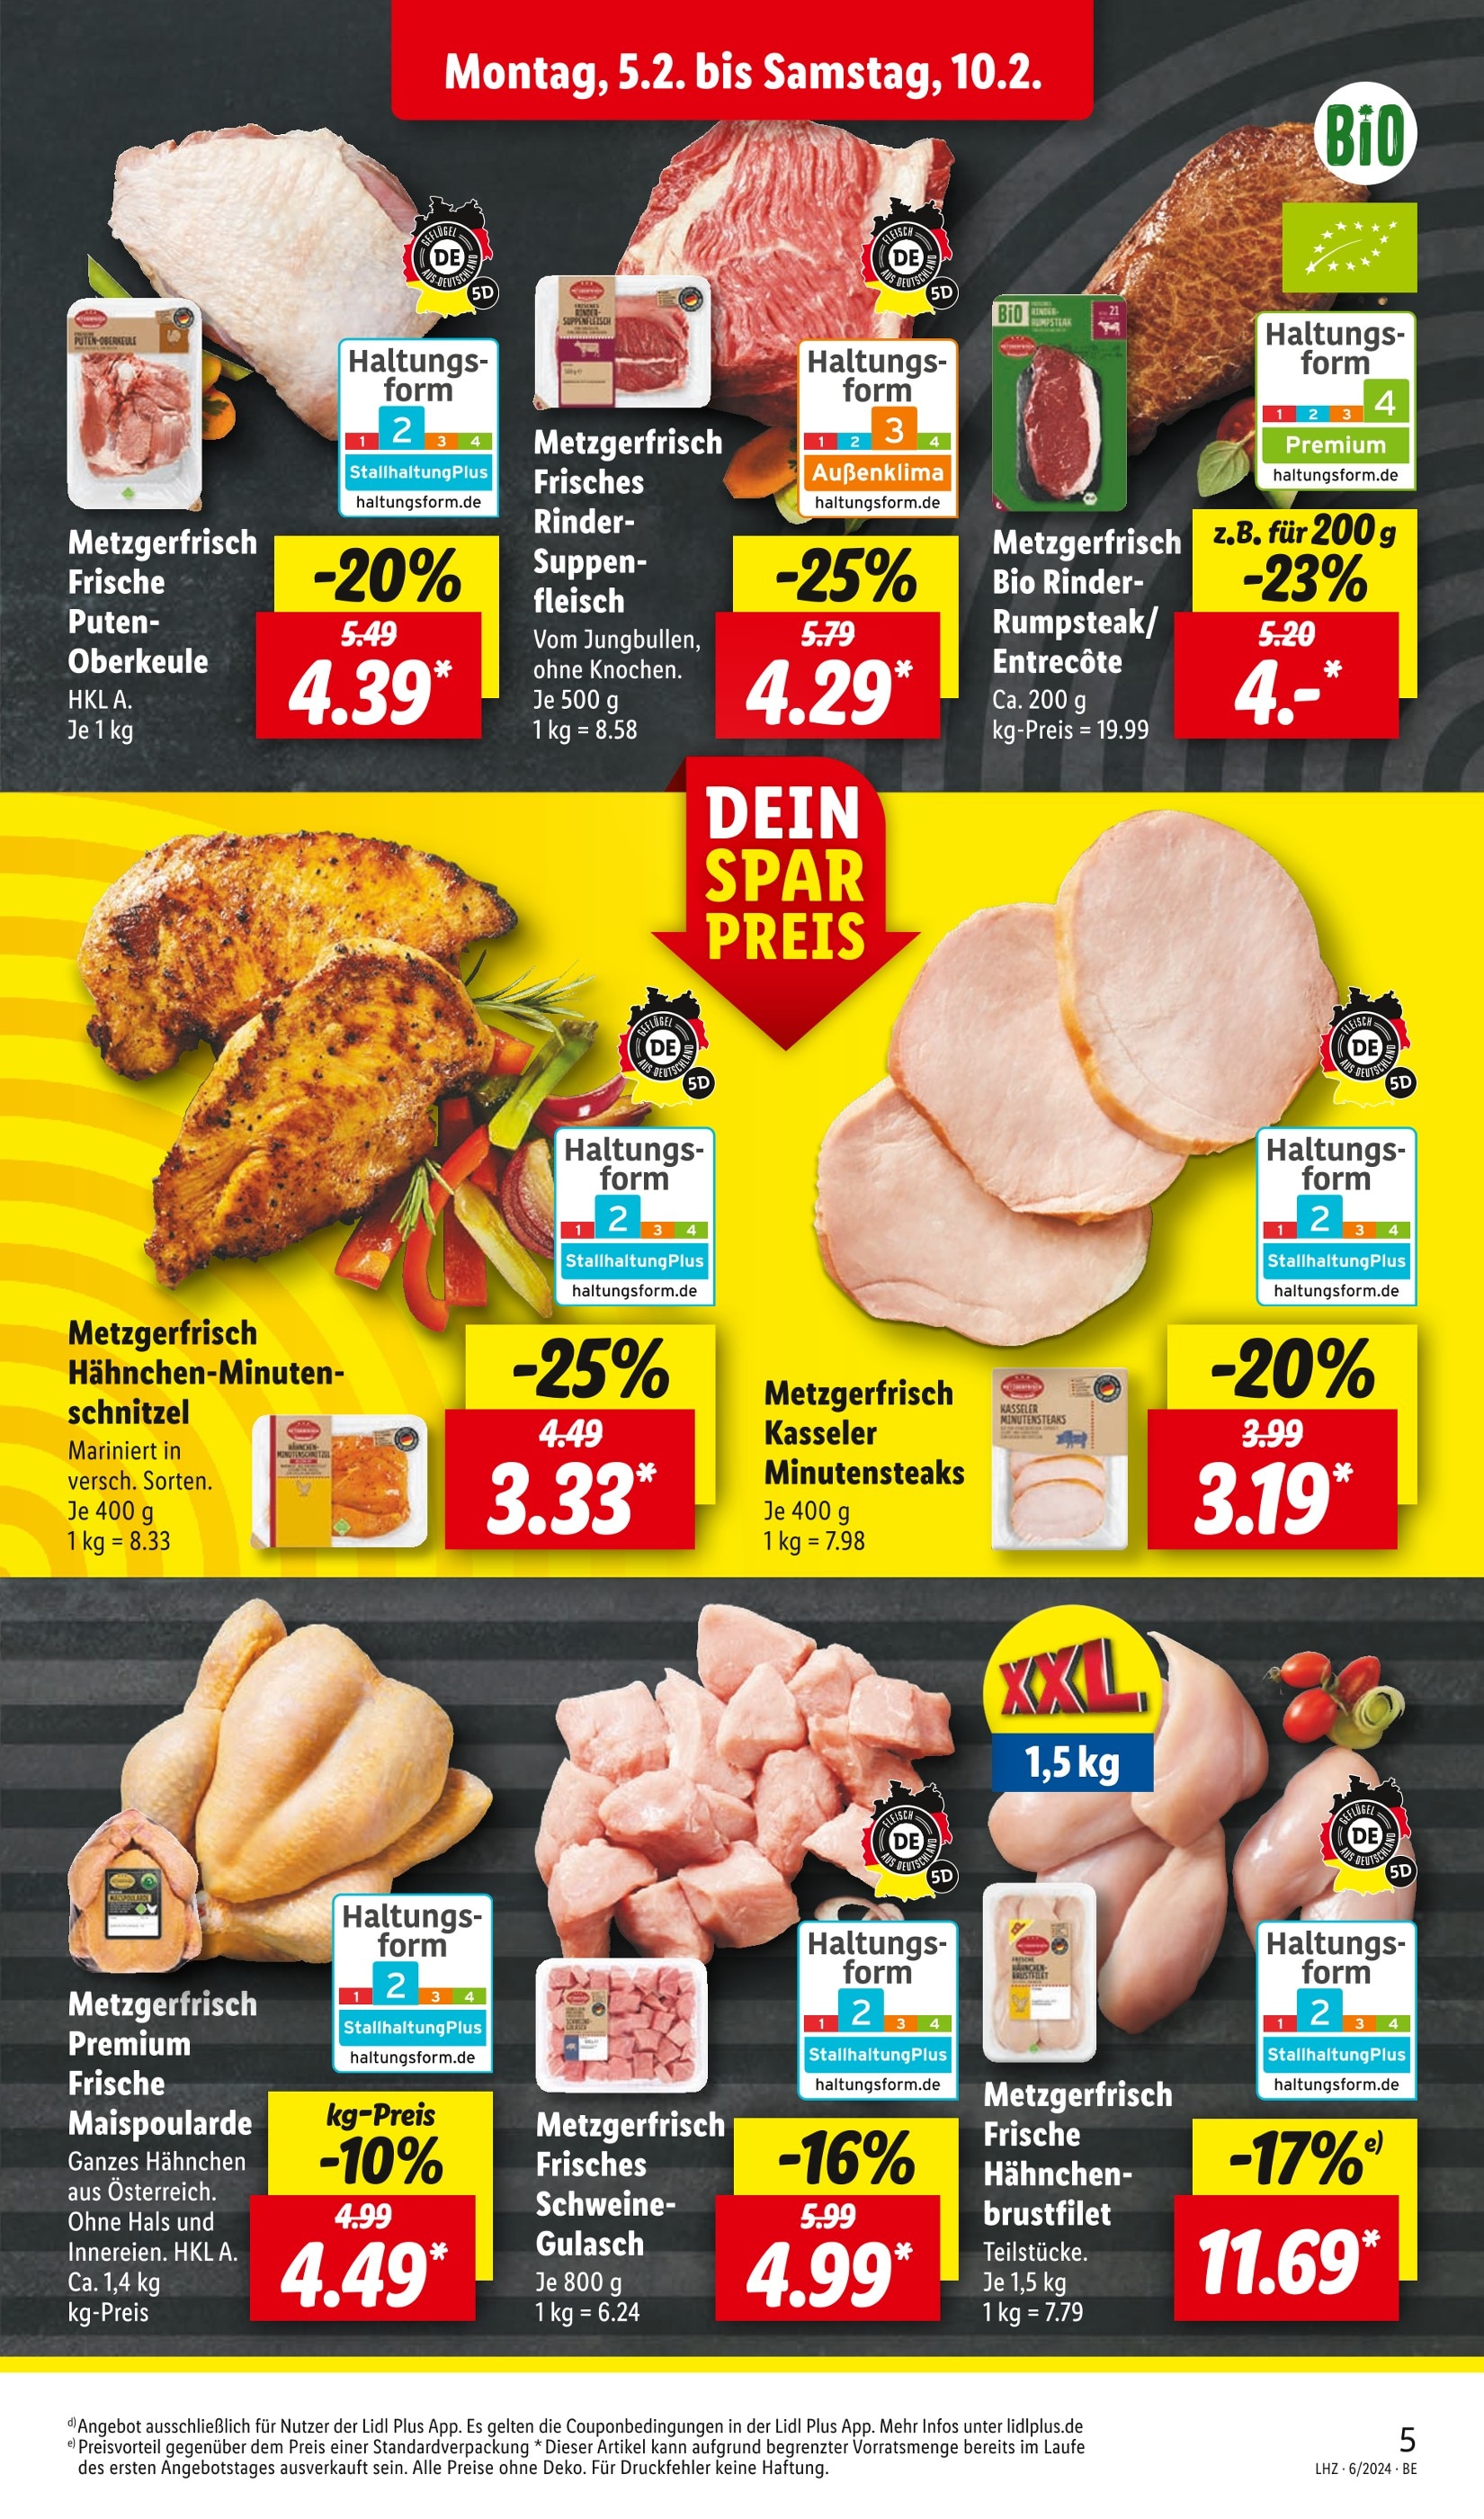 Suppenfleisch kaufen » günstige Suppenfleisch Angebote zum Top Preis